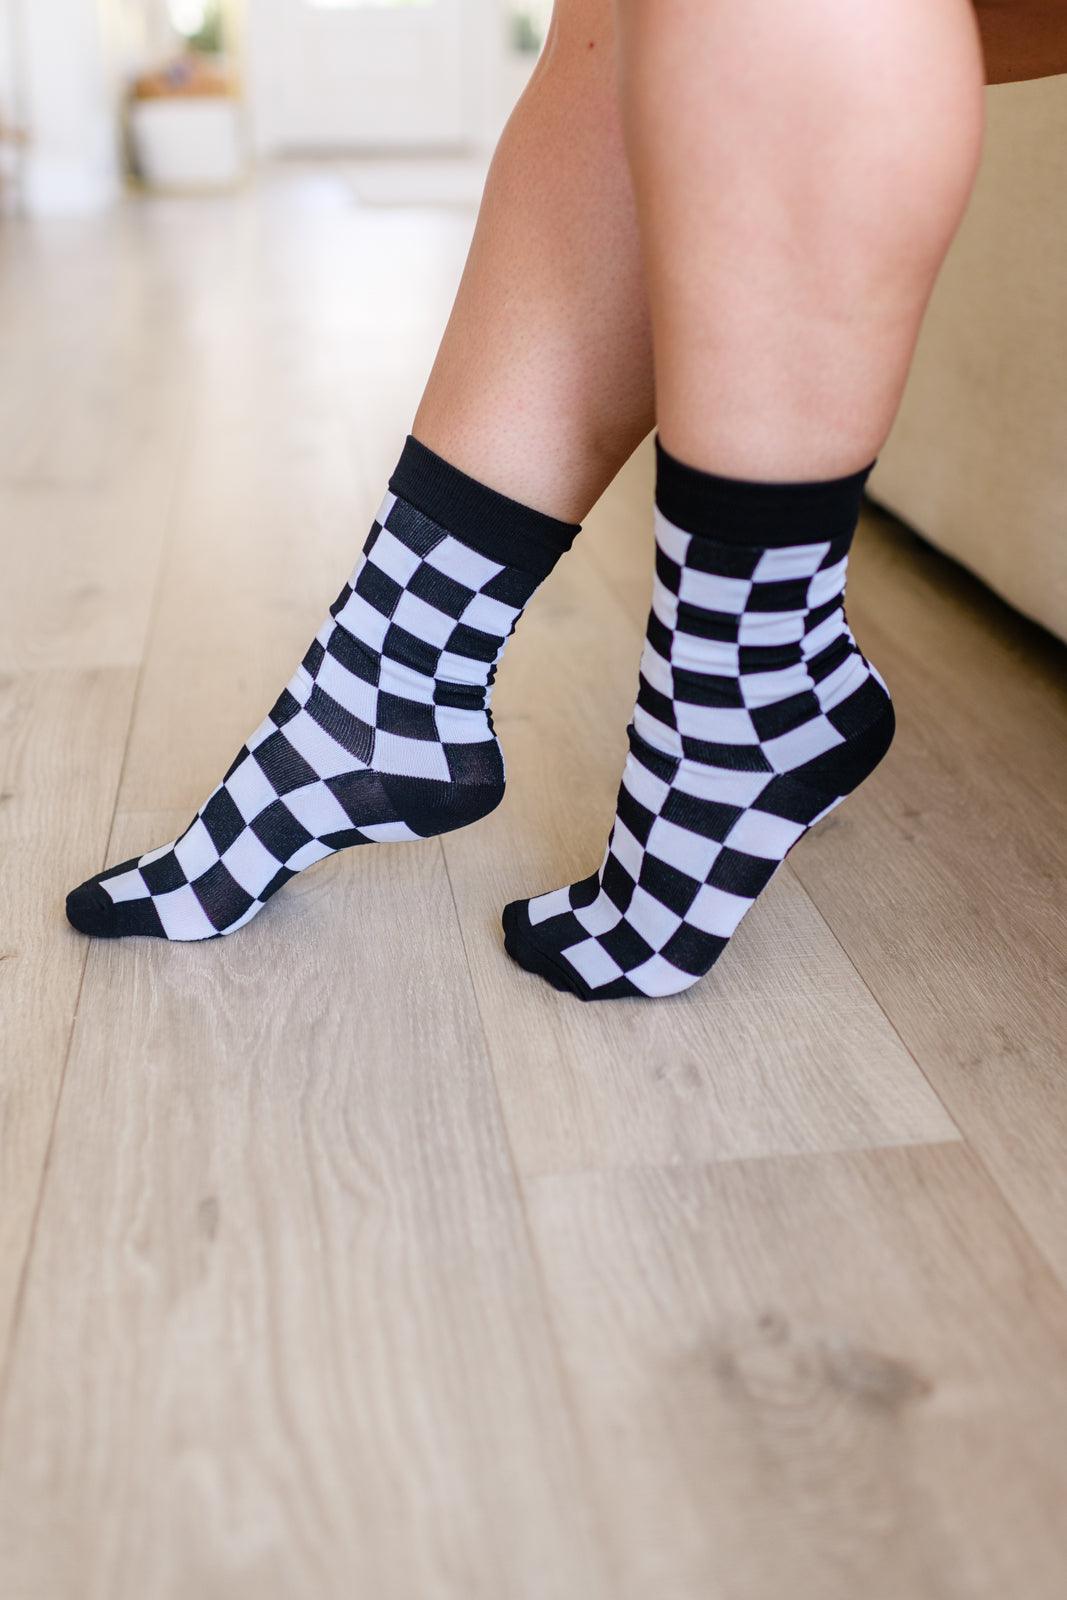 Sweet Socks Checkerboard - PEONIES & LIME